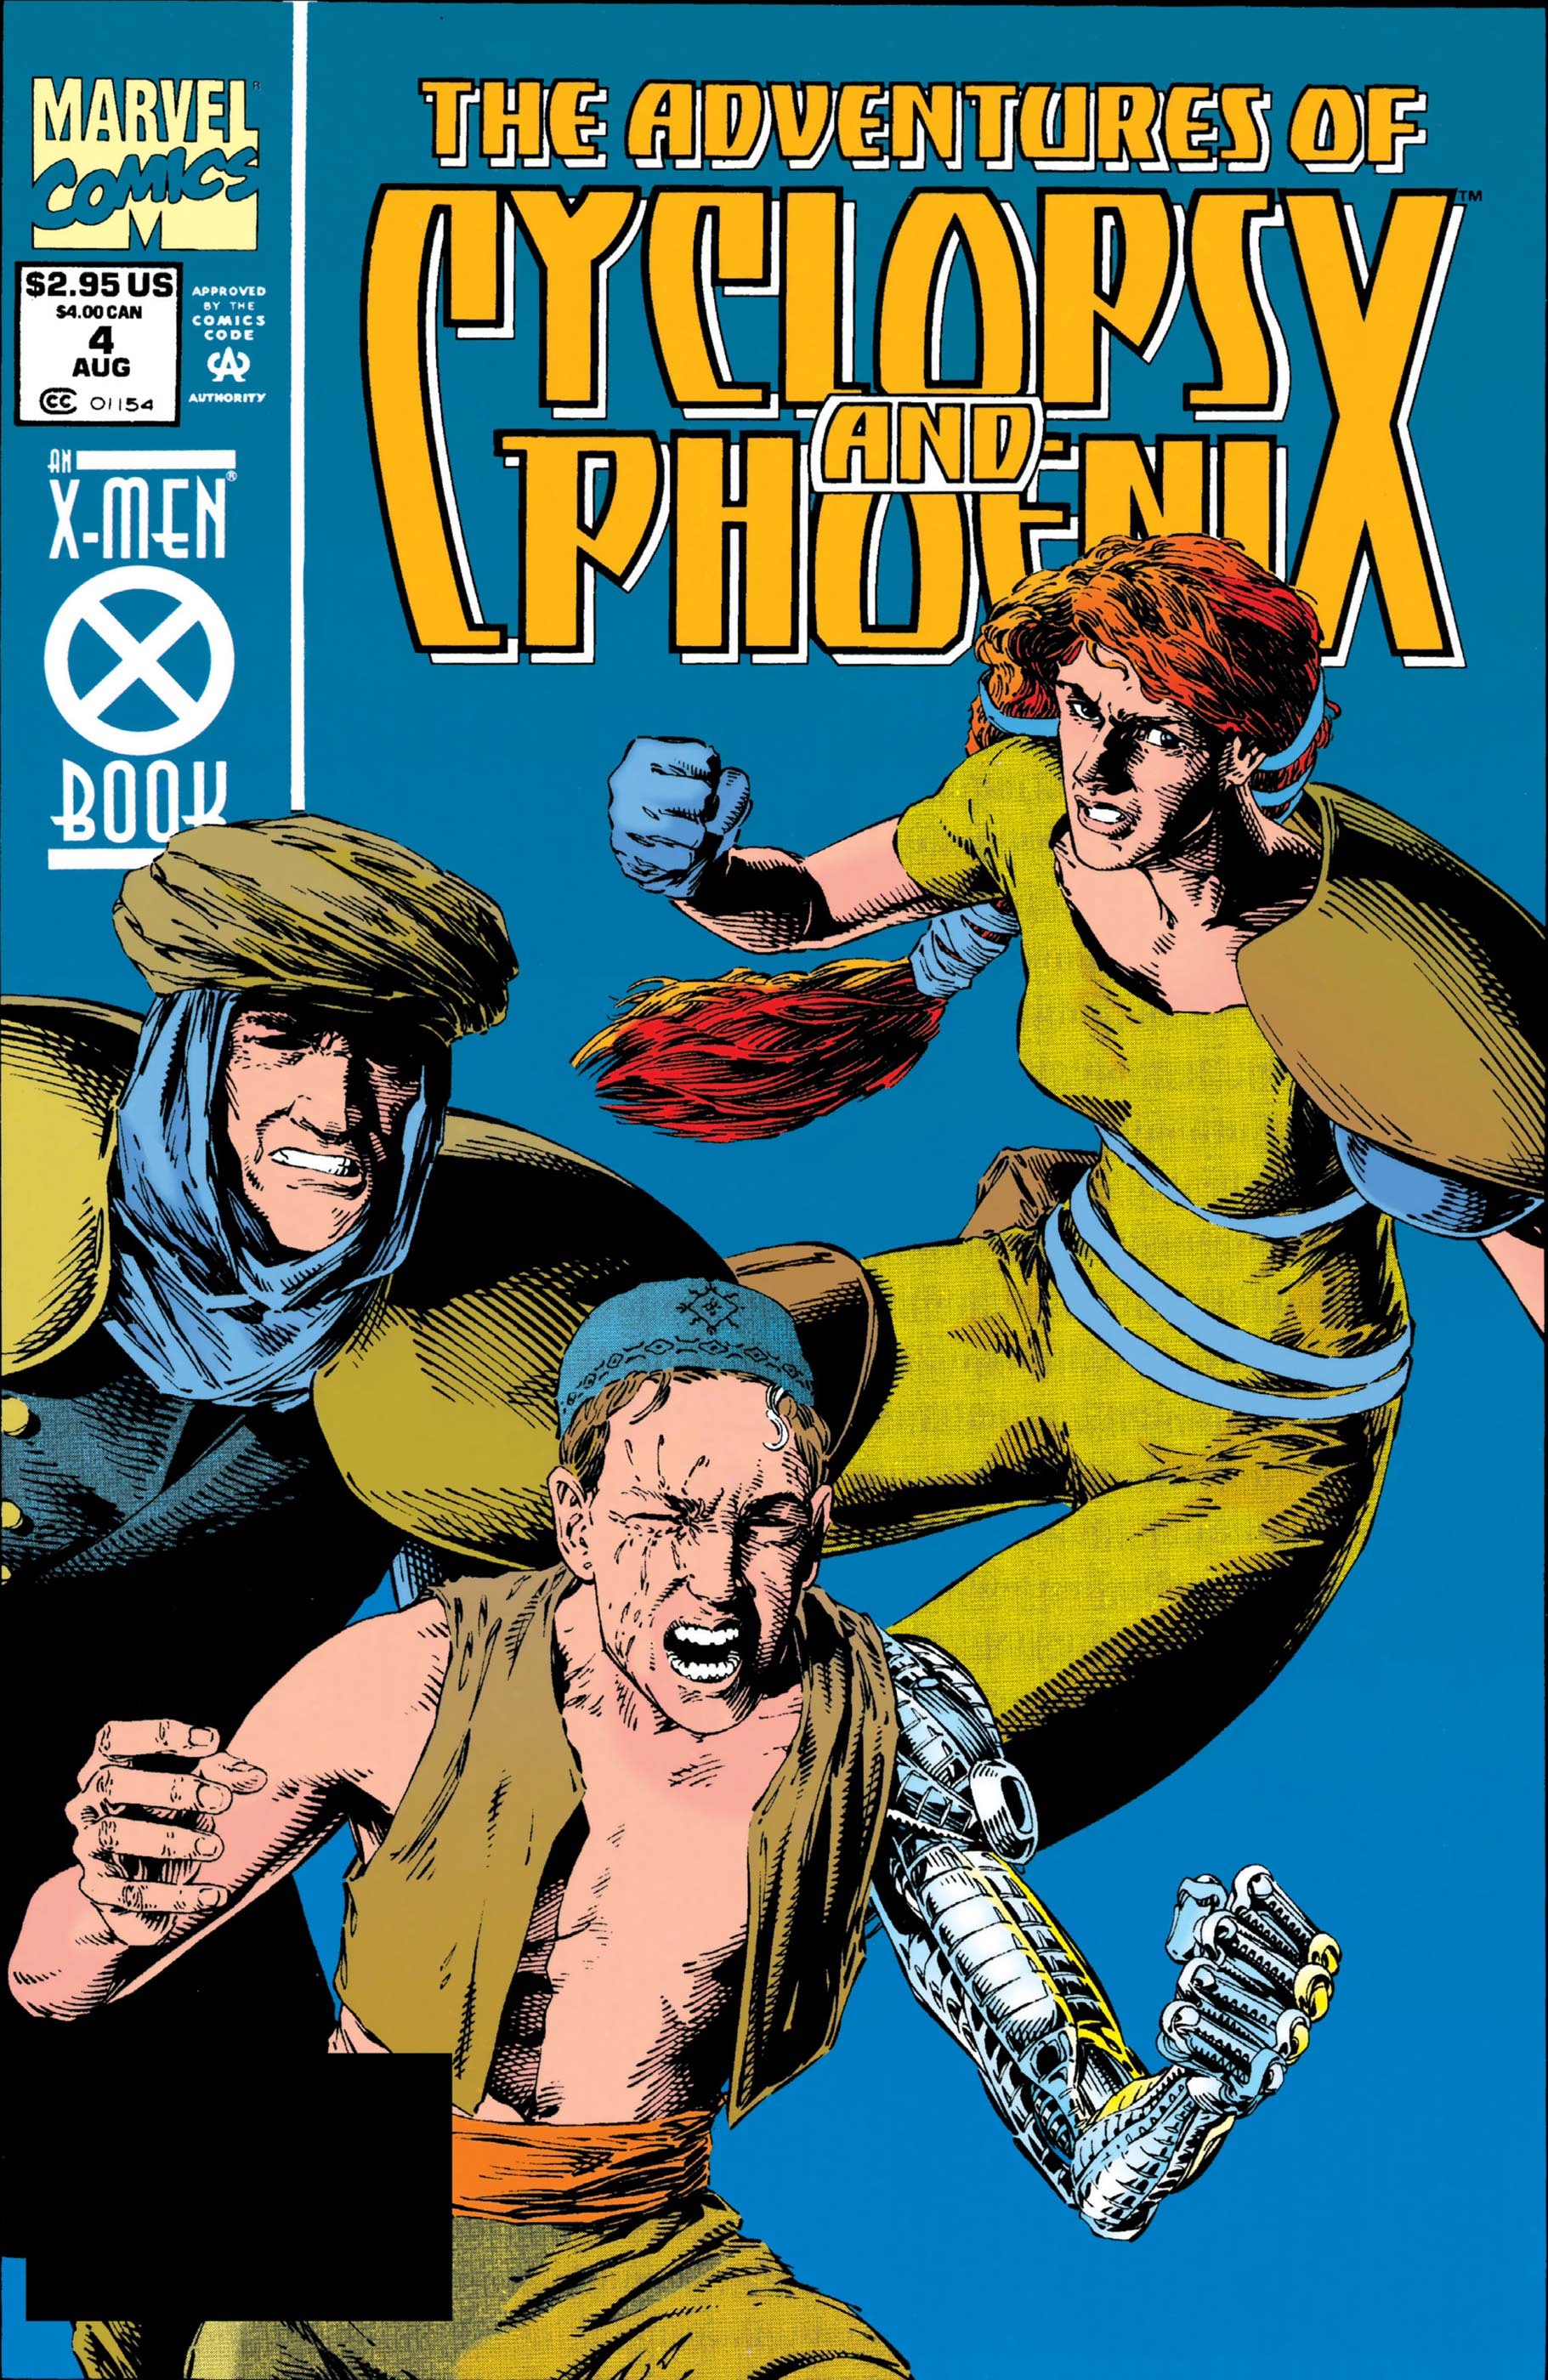 Adventures of Cyclops & Phoenix (1994) #4